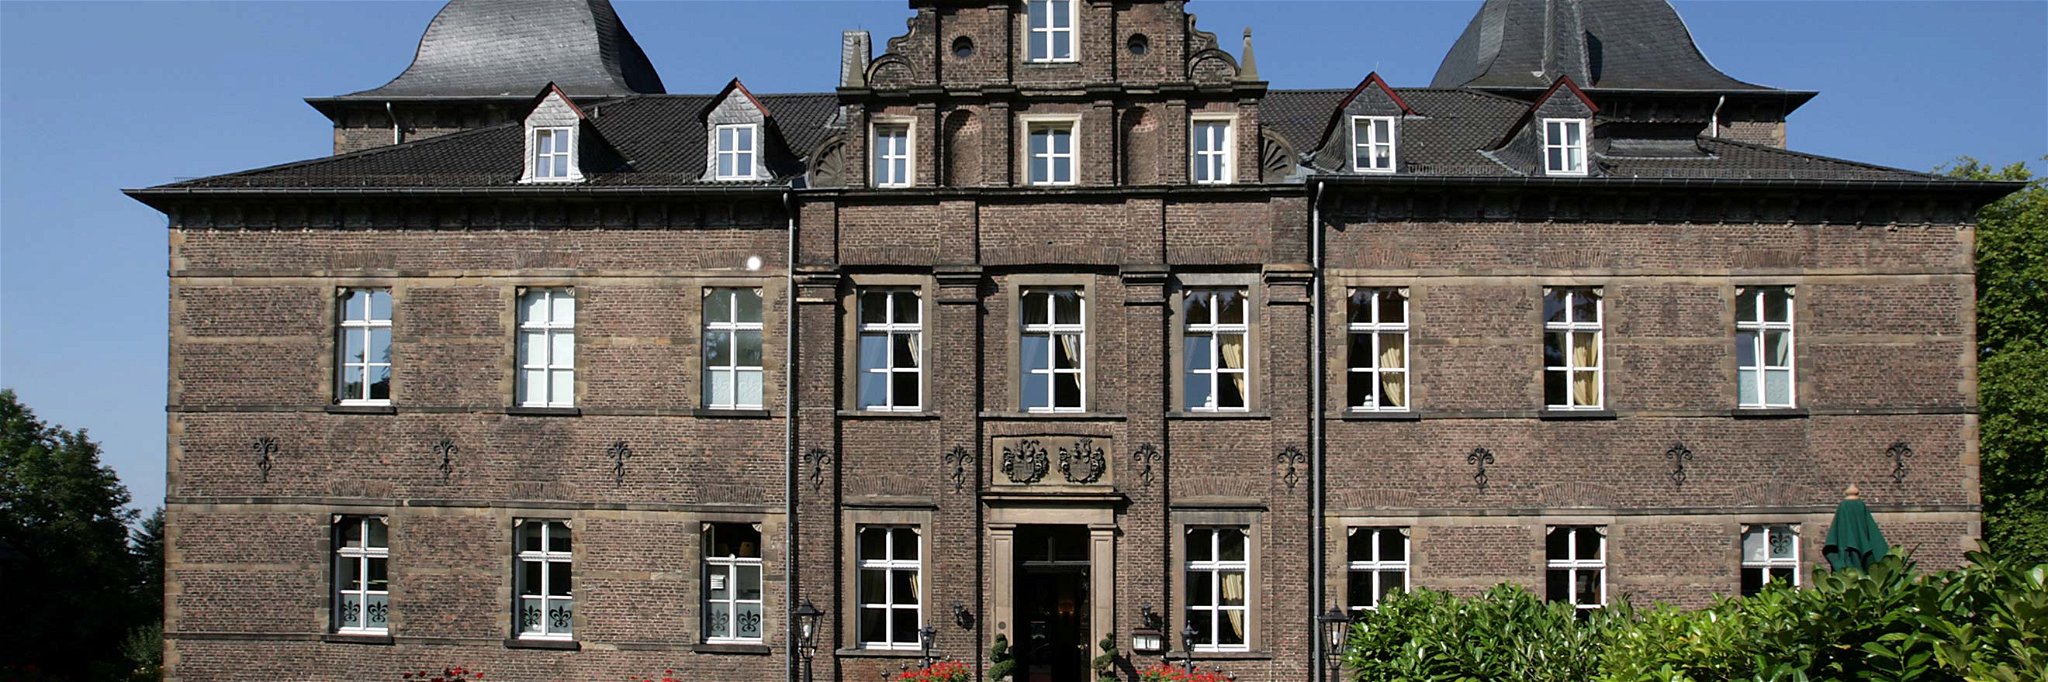 Das Schlosshotel Hugenpoet in Essen.